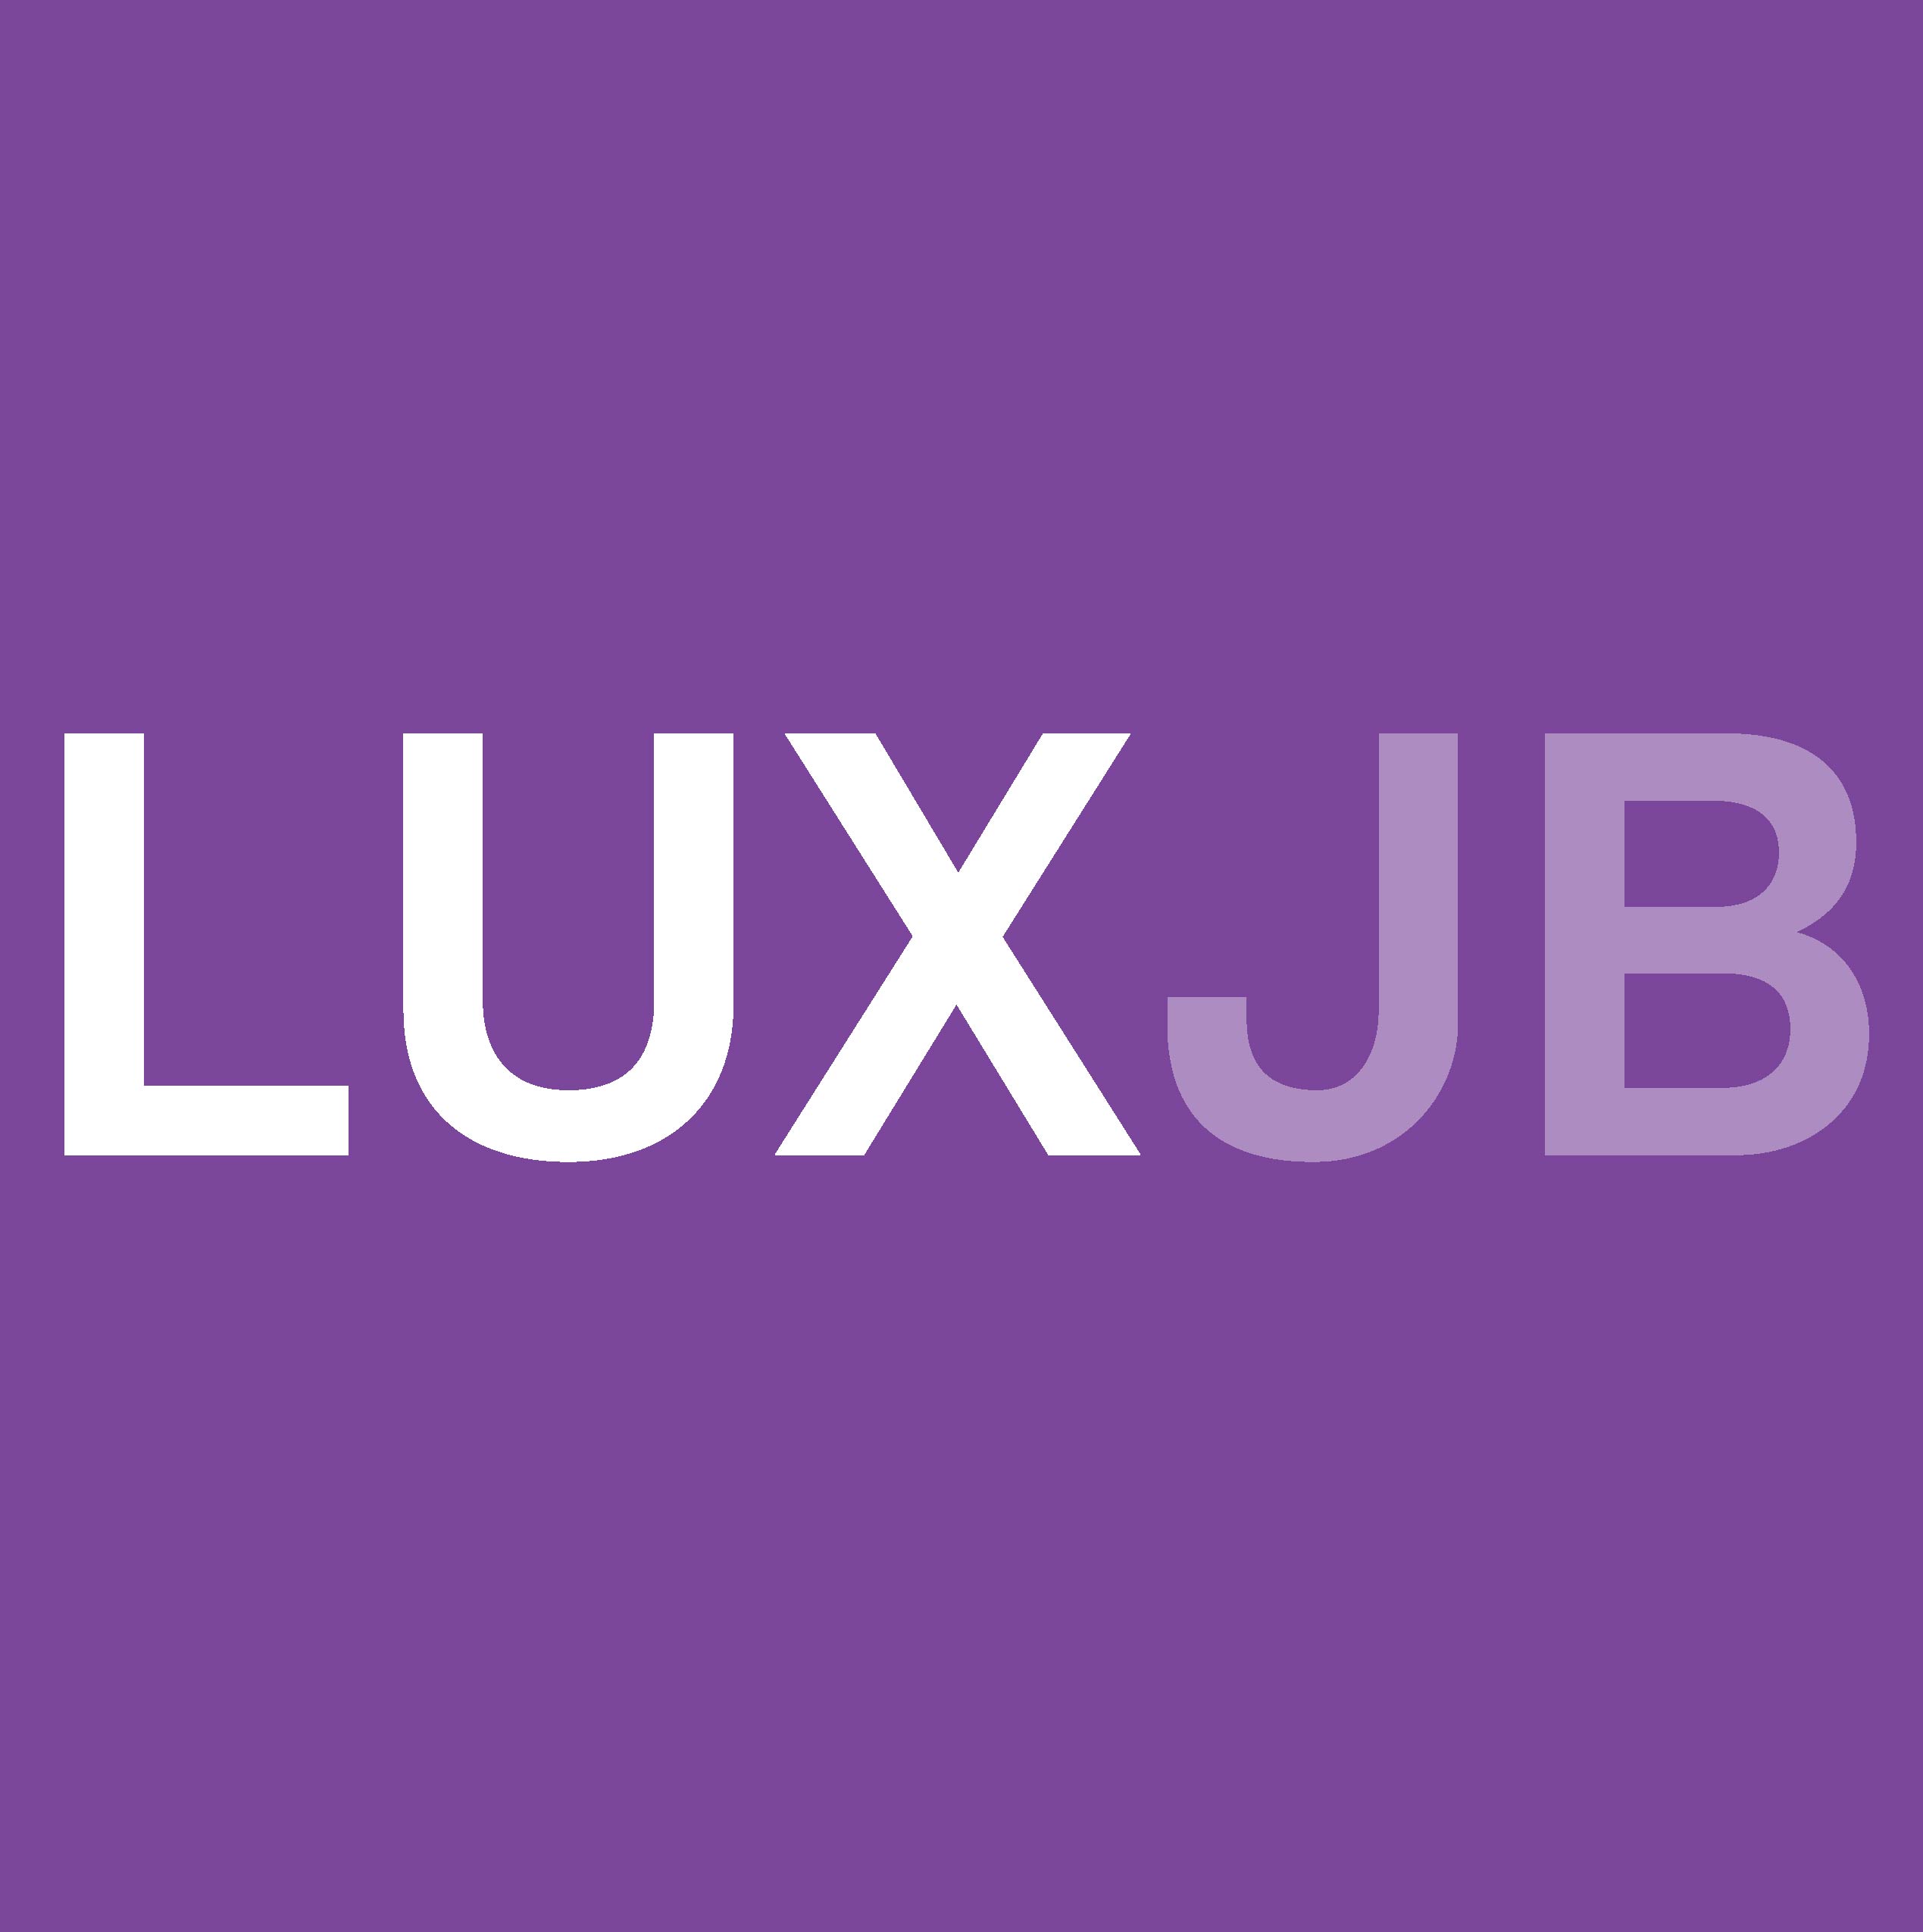 Luxjb logo